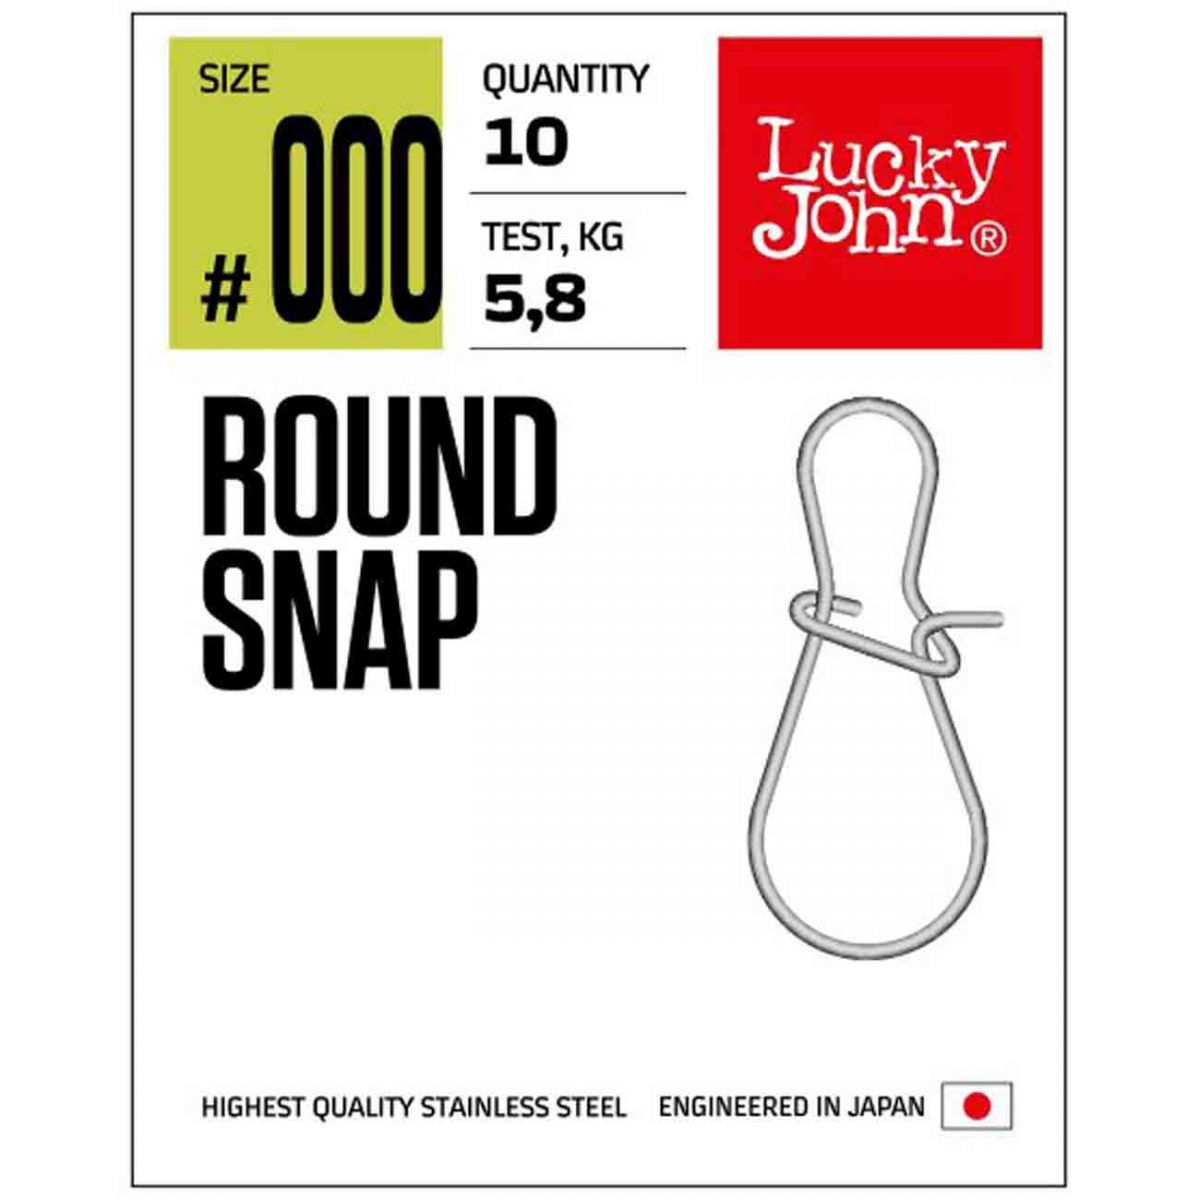 Lucky John 5113 Round Snap No : 0000 lrf avları için kullanıma uygundur. 